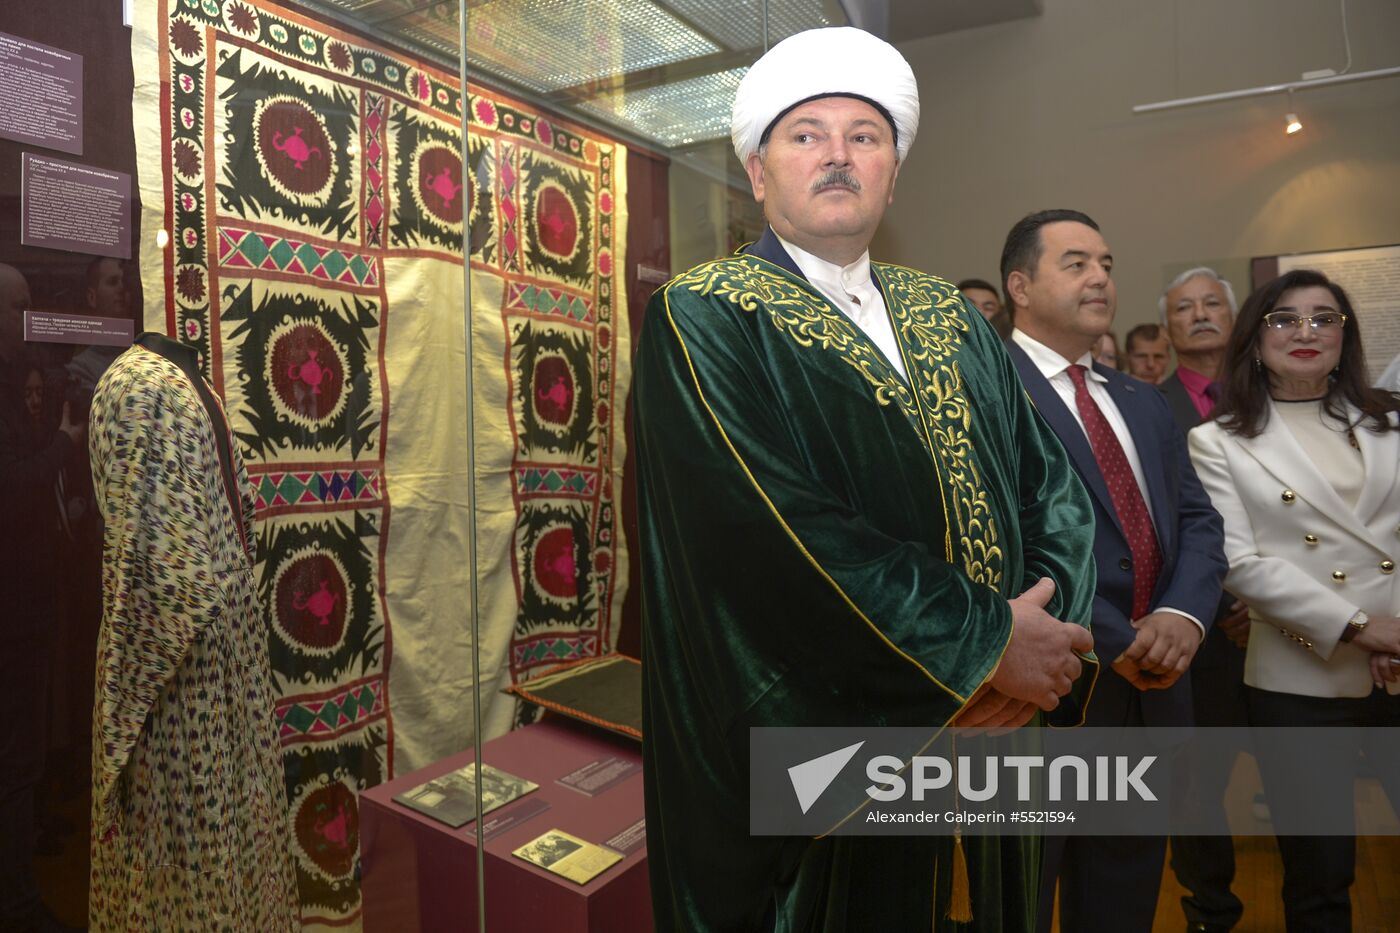 Uzbekistan's Cultural Heritage international congress in St. Petersburg